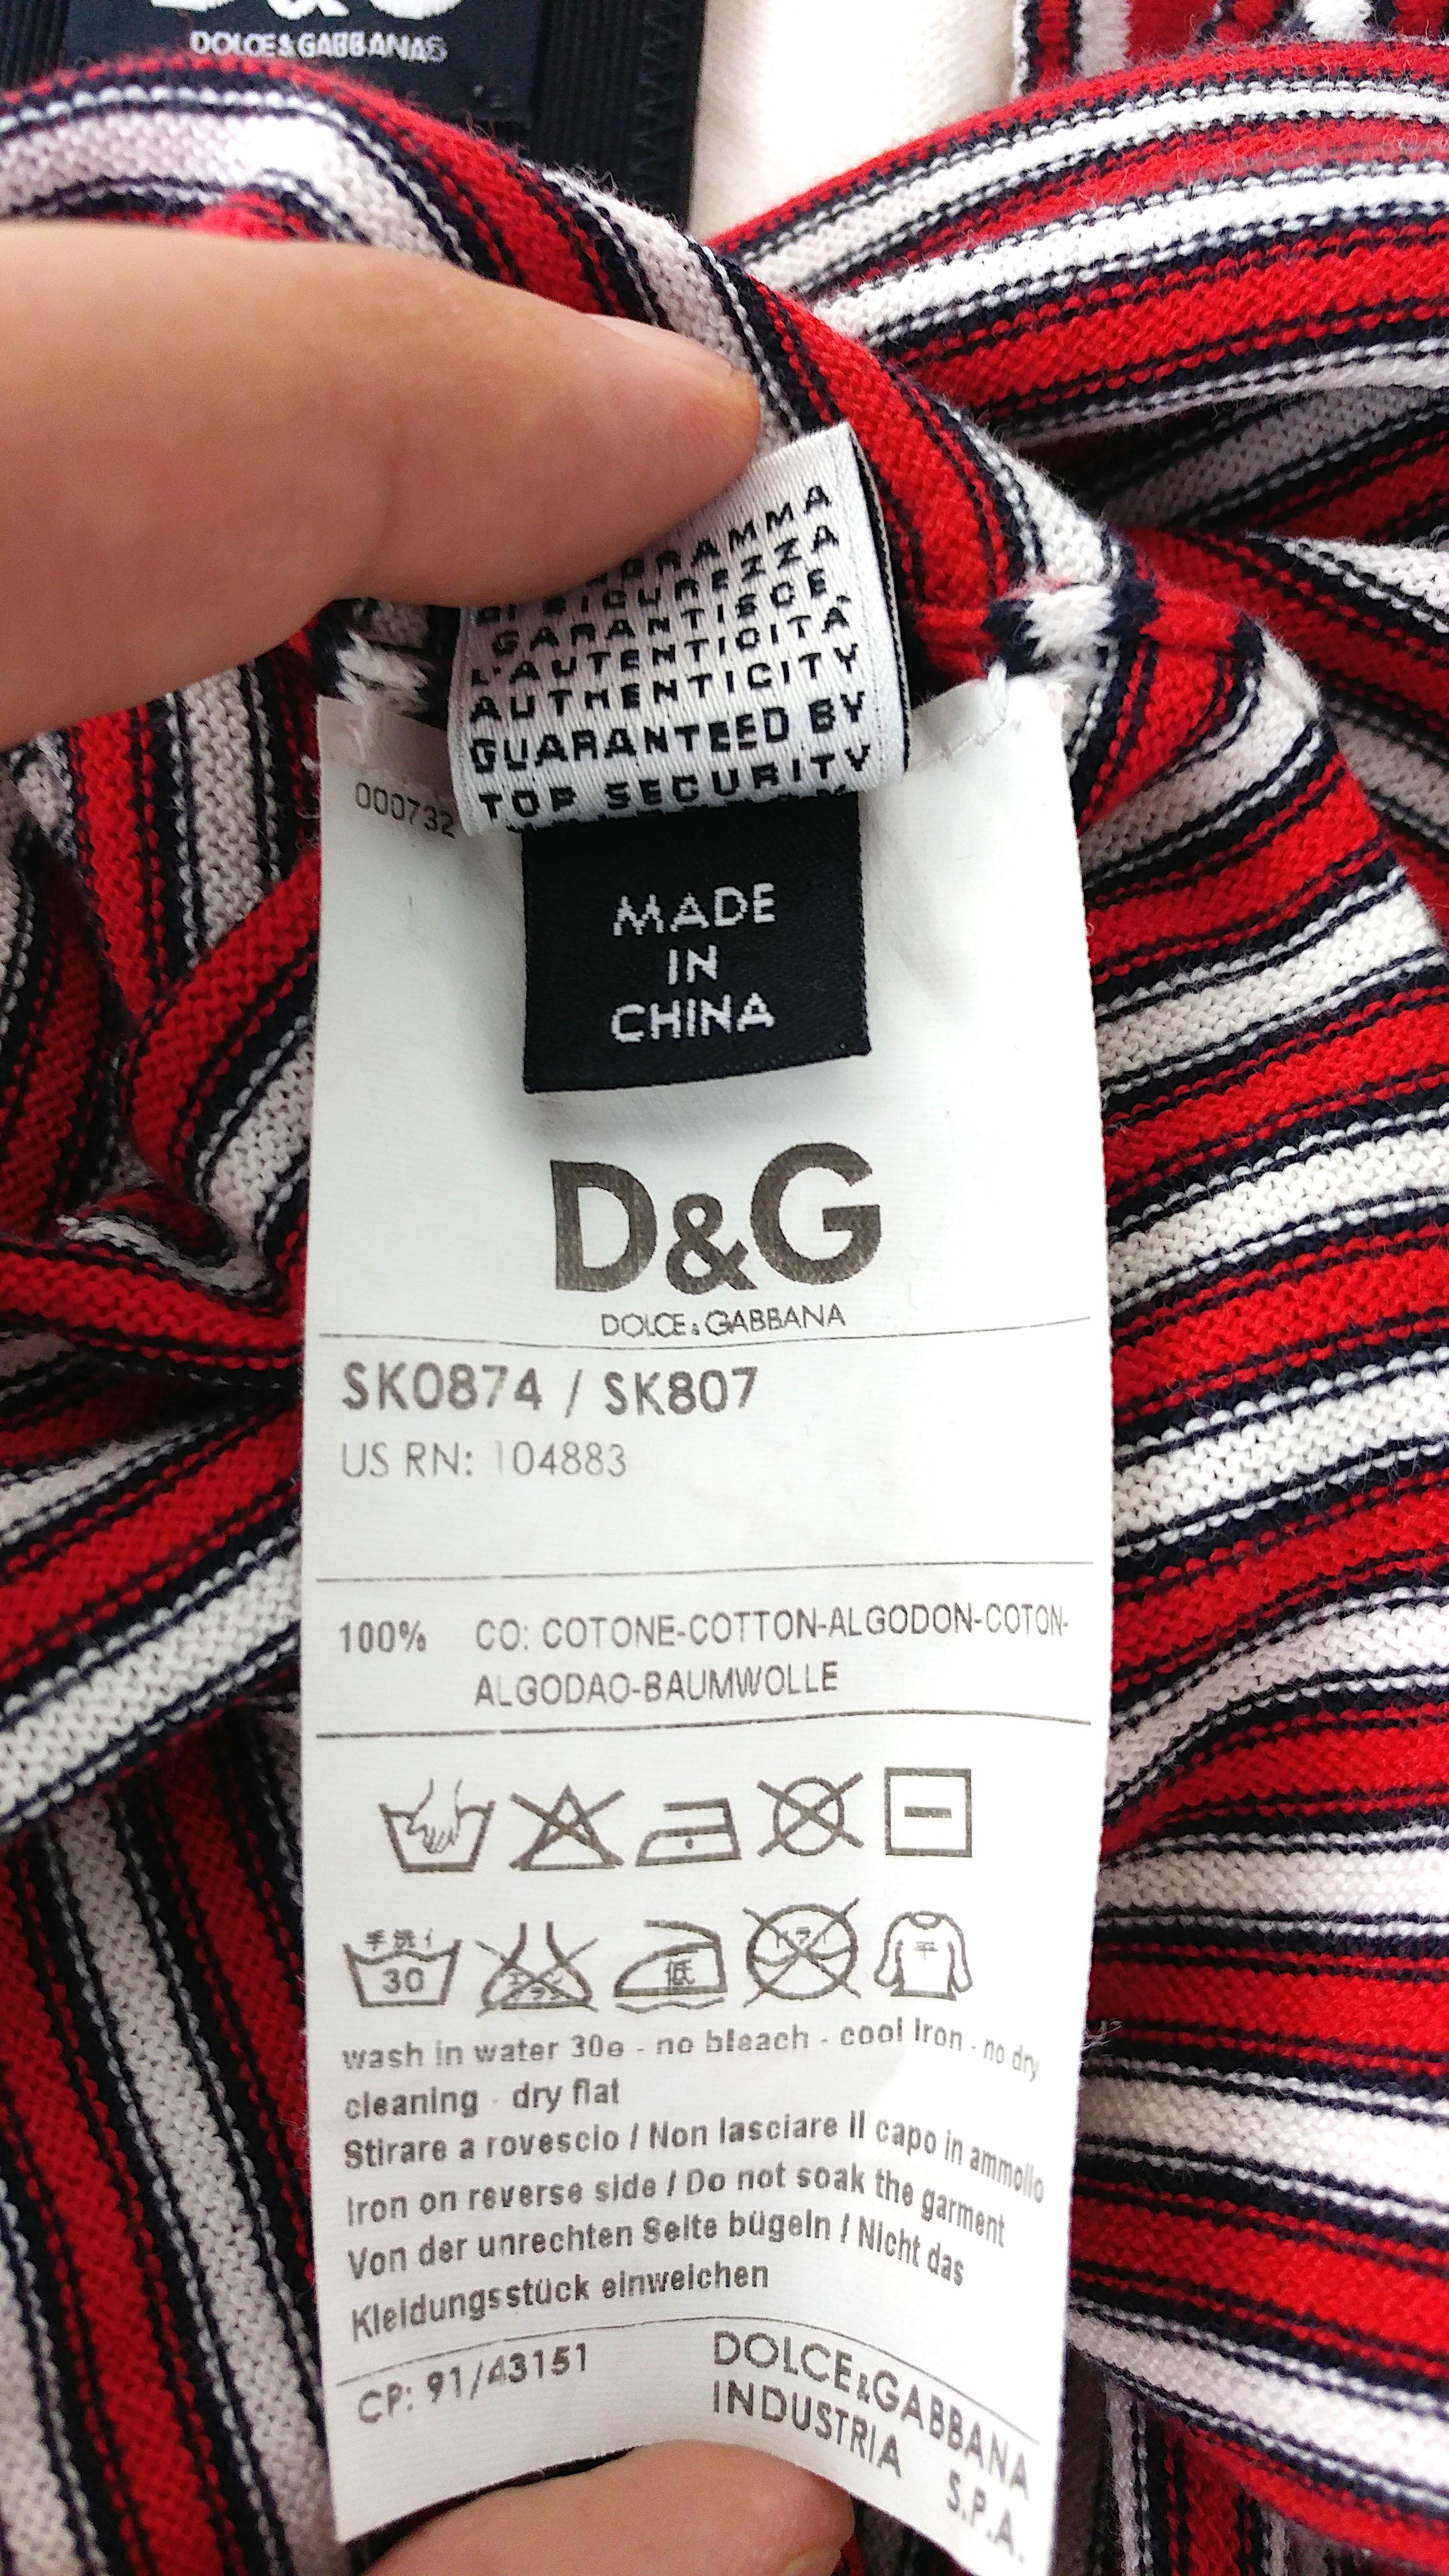 DOLCE & GABBANA – SS '09 Summer Knit Cotton Sheath Halter Dress  Size S 2